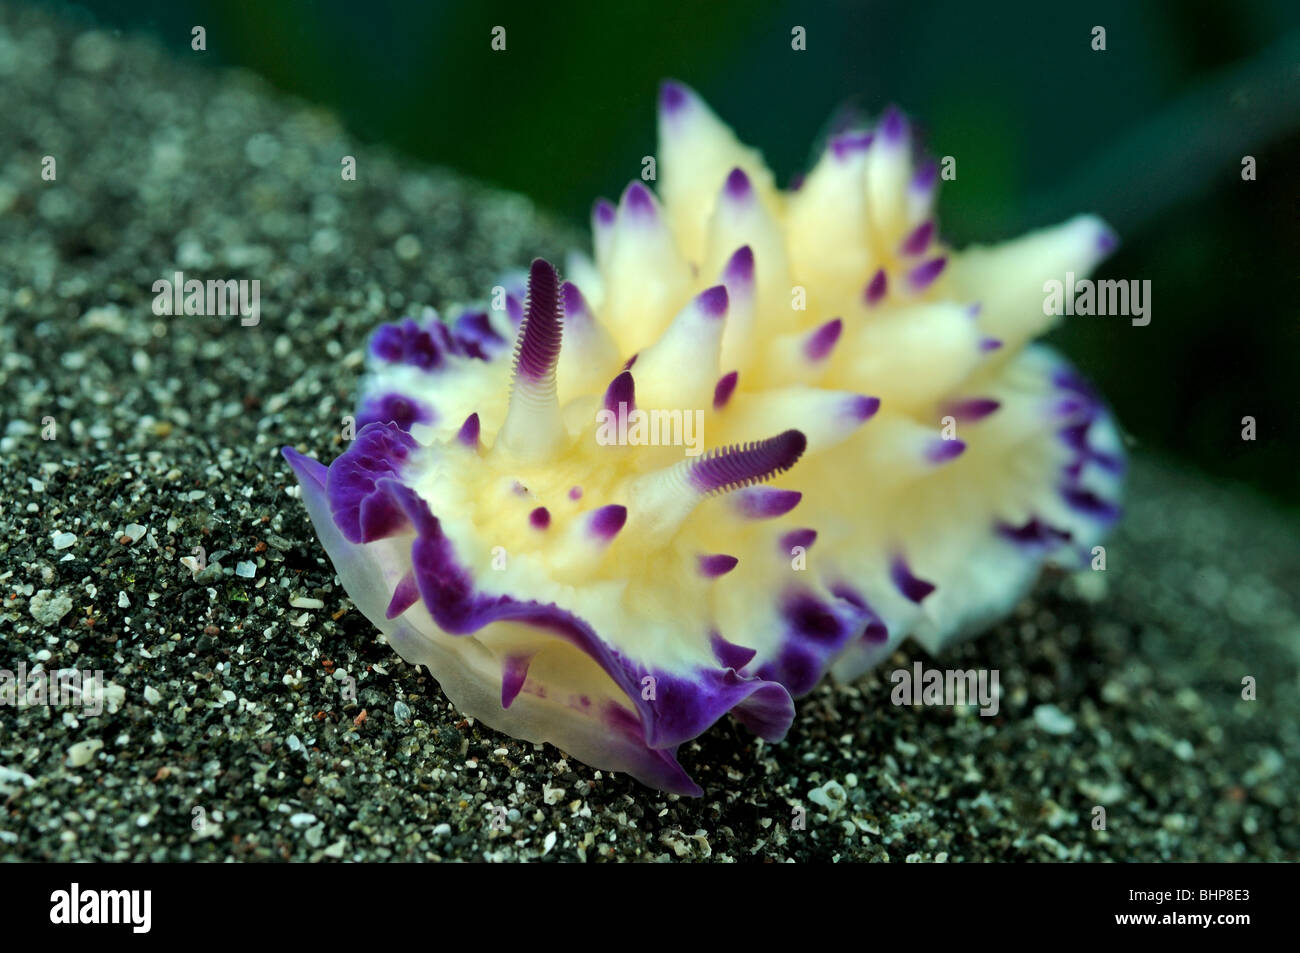 Mexichromis multituberculata, giallo viola nudibranch deposizione delle uova, Secret Bay, Gilimanuk, Bali, Indonesia, Indo-pacifico Ocean Foto Stock